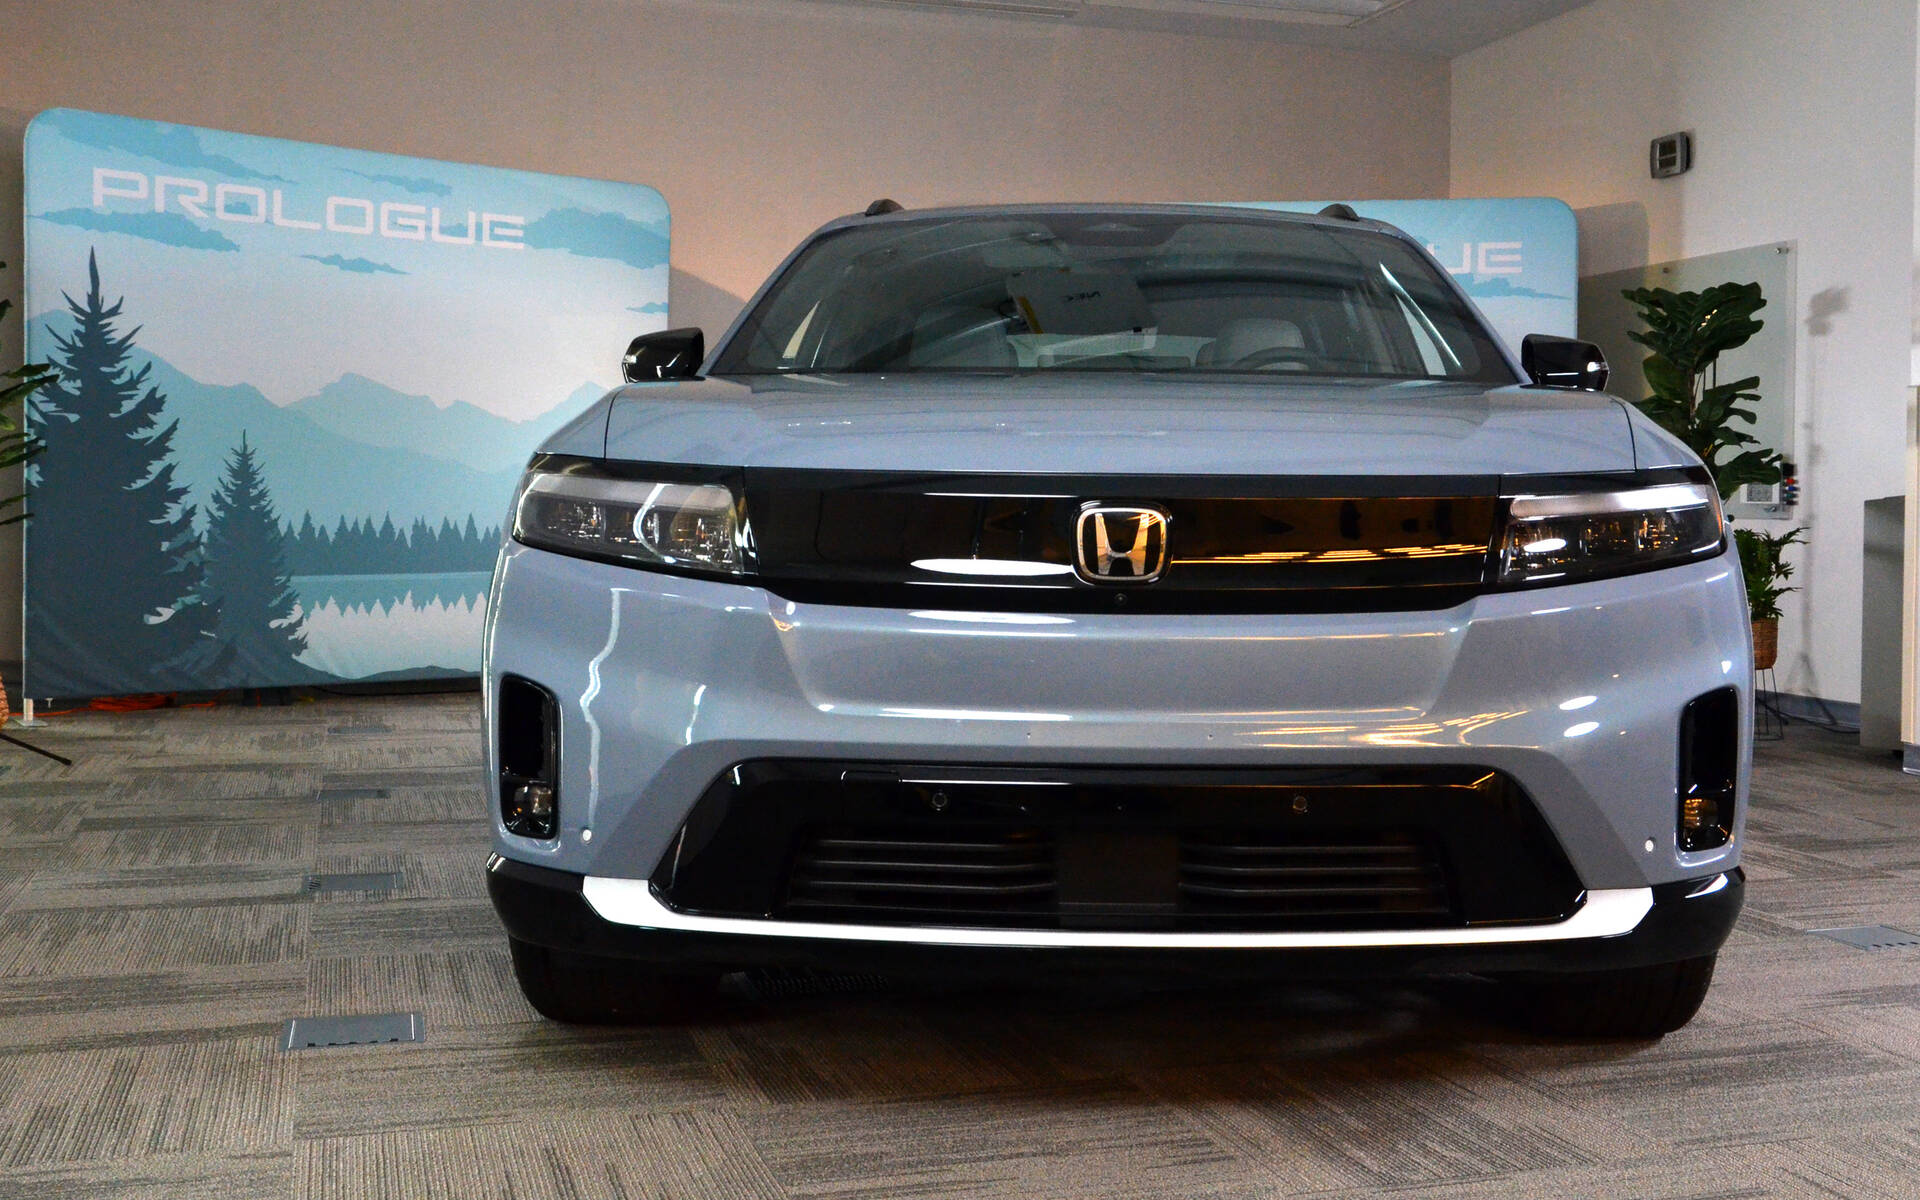 Honda présente le Prologue, son premier SUV électrique